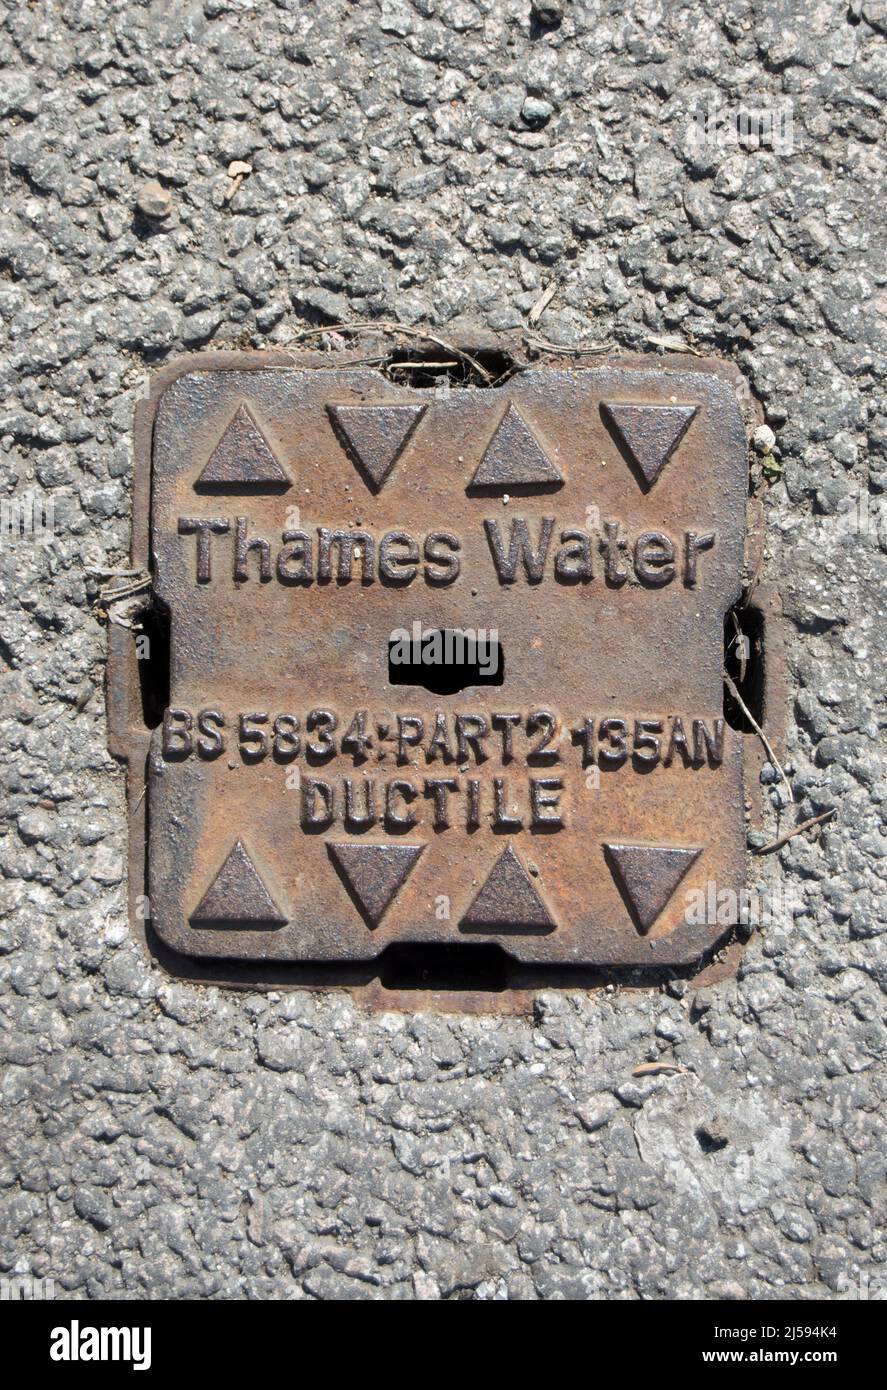 couverture de trou d'homme de rue pour un ductile d'eau de la tamise, à twickenham, middlesex, angleterre Banque D'Images